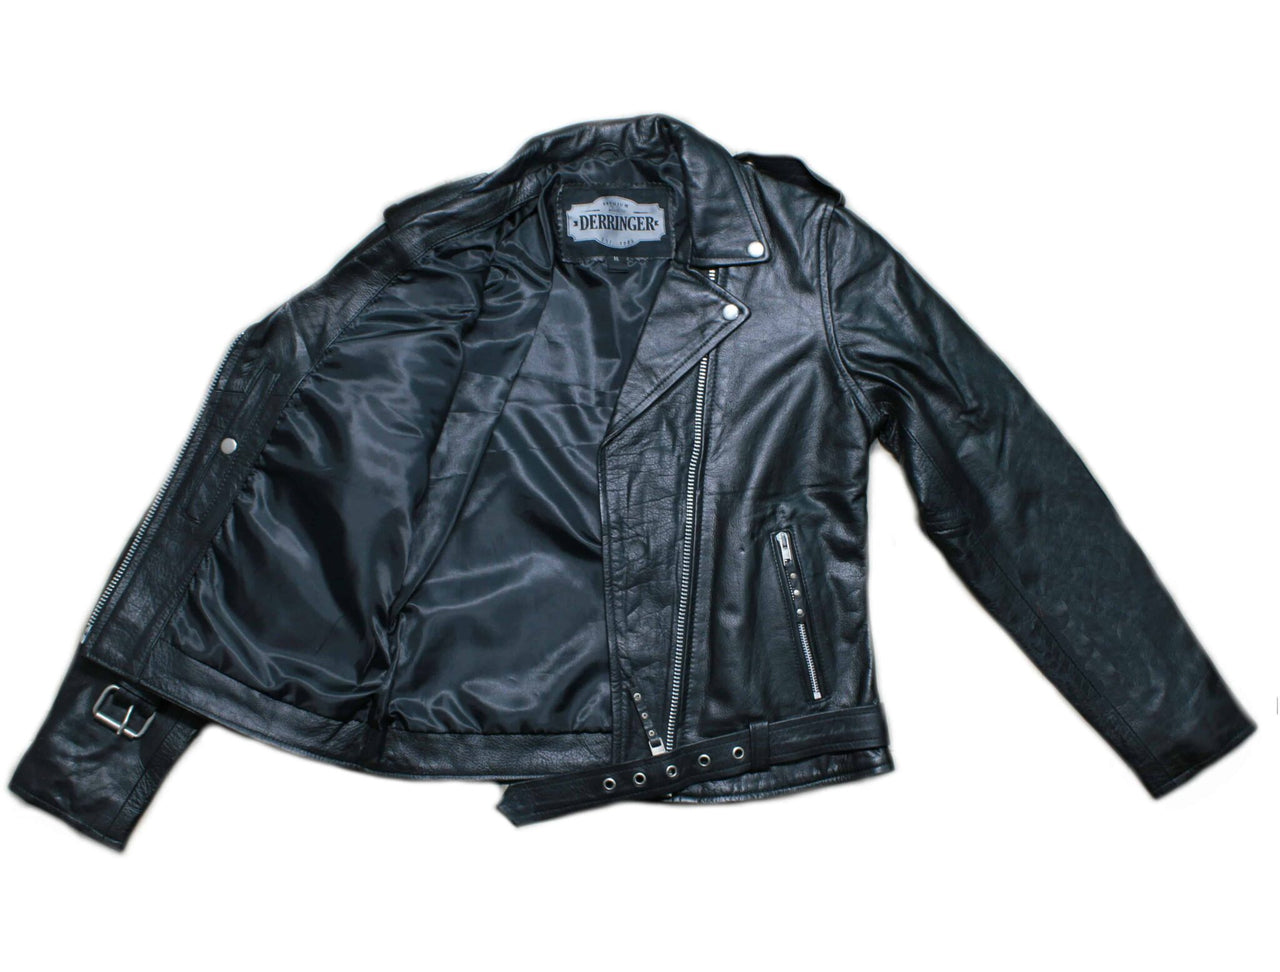 Women's Leather Biker Jacket